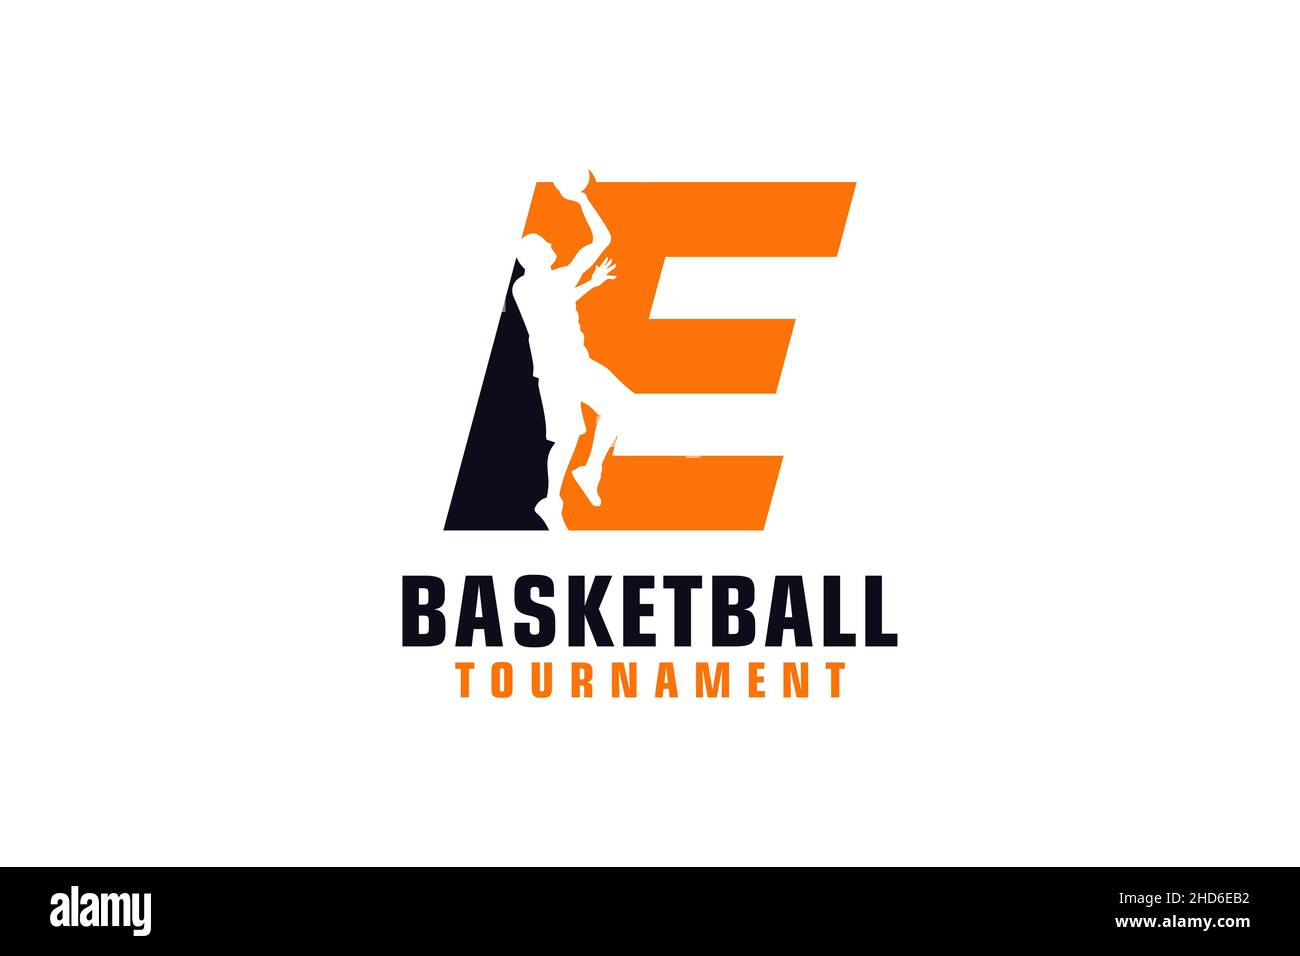 Carta E con diseño de logotipo de baloncesto. Elementos de plantilla de diseño vectorial para Sport Team o Corporate. Ilustración del Vector